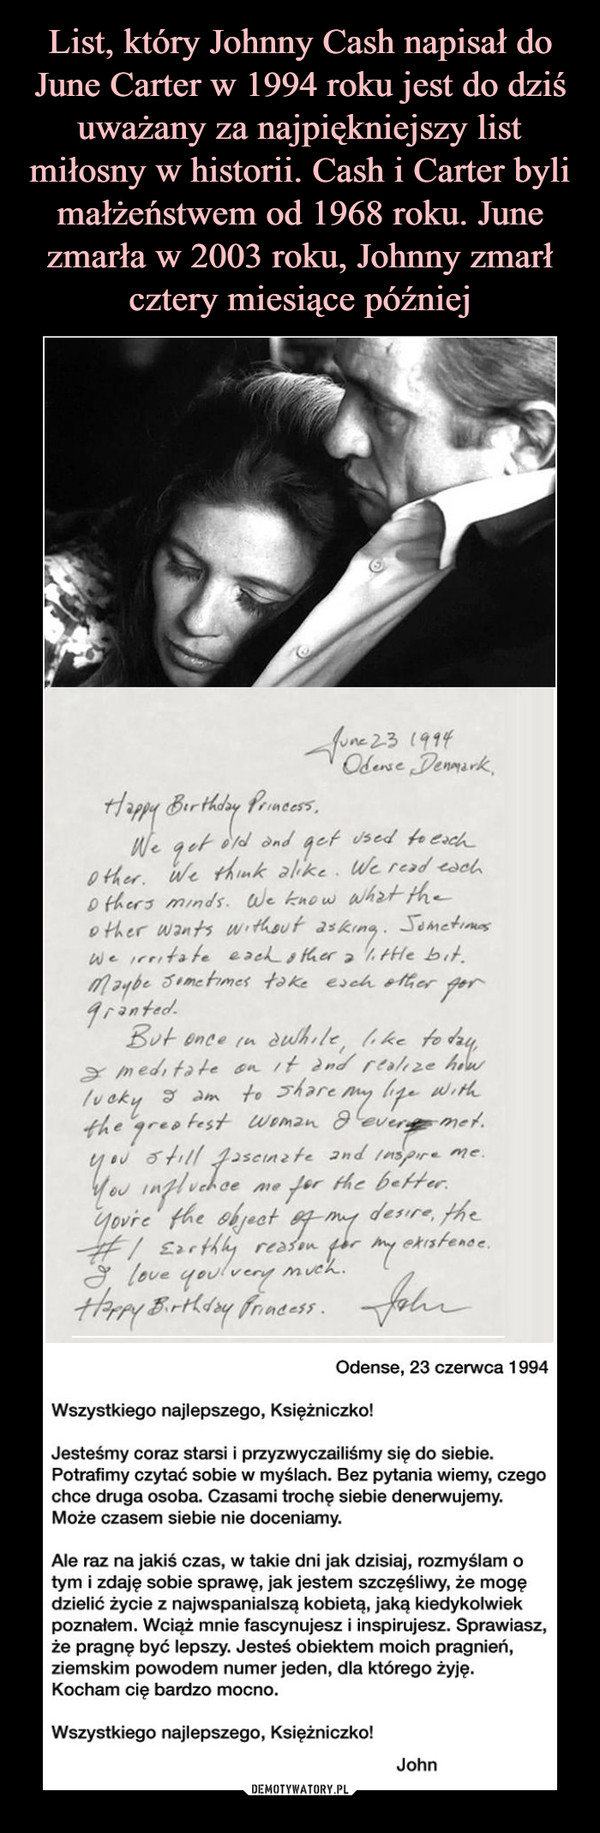 List, który Johnny Cash napisał do June Carter w 1994 roku jest do dziś uważany za najpiękniejszy list miłosny w historii. Cash i Carter byli małżeństwem od 1968 roku. June zmarła w 2003 roku, Johnny zmarł cztery miesiące później